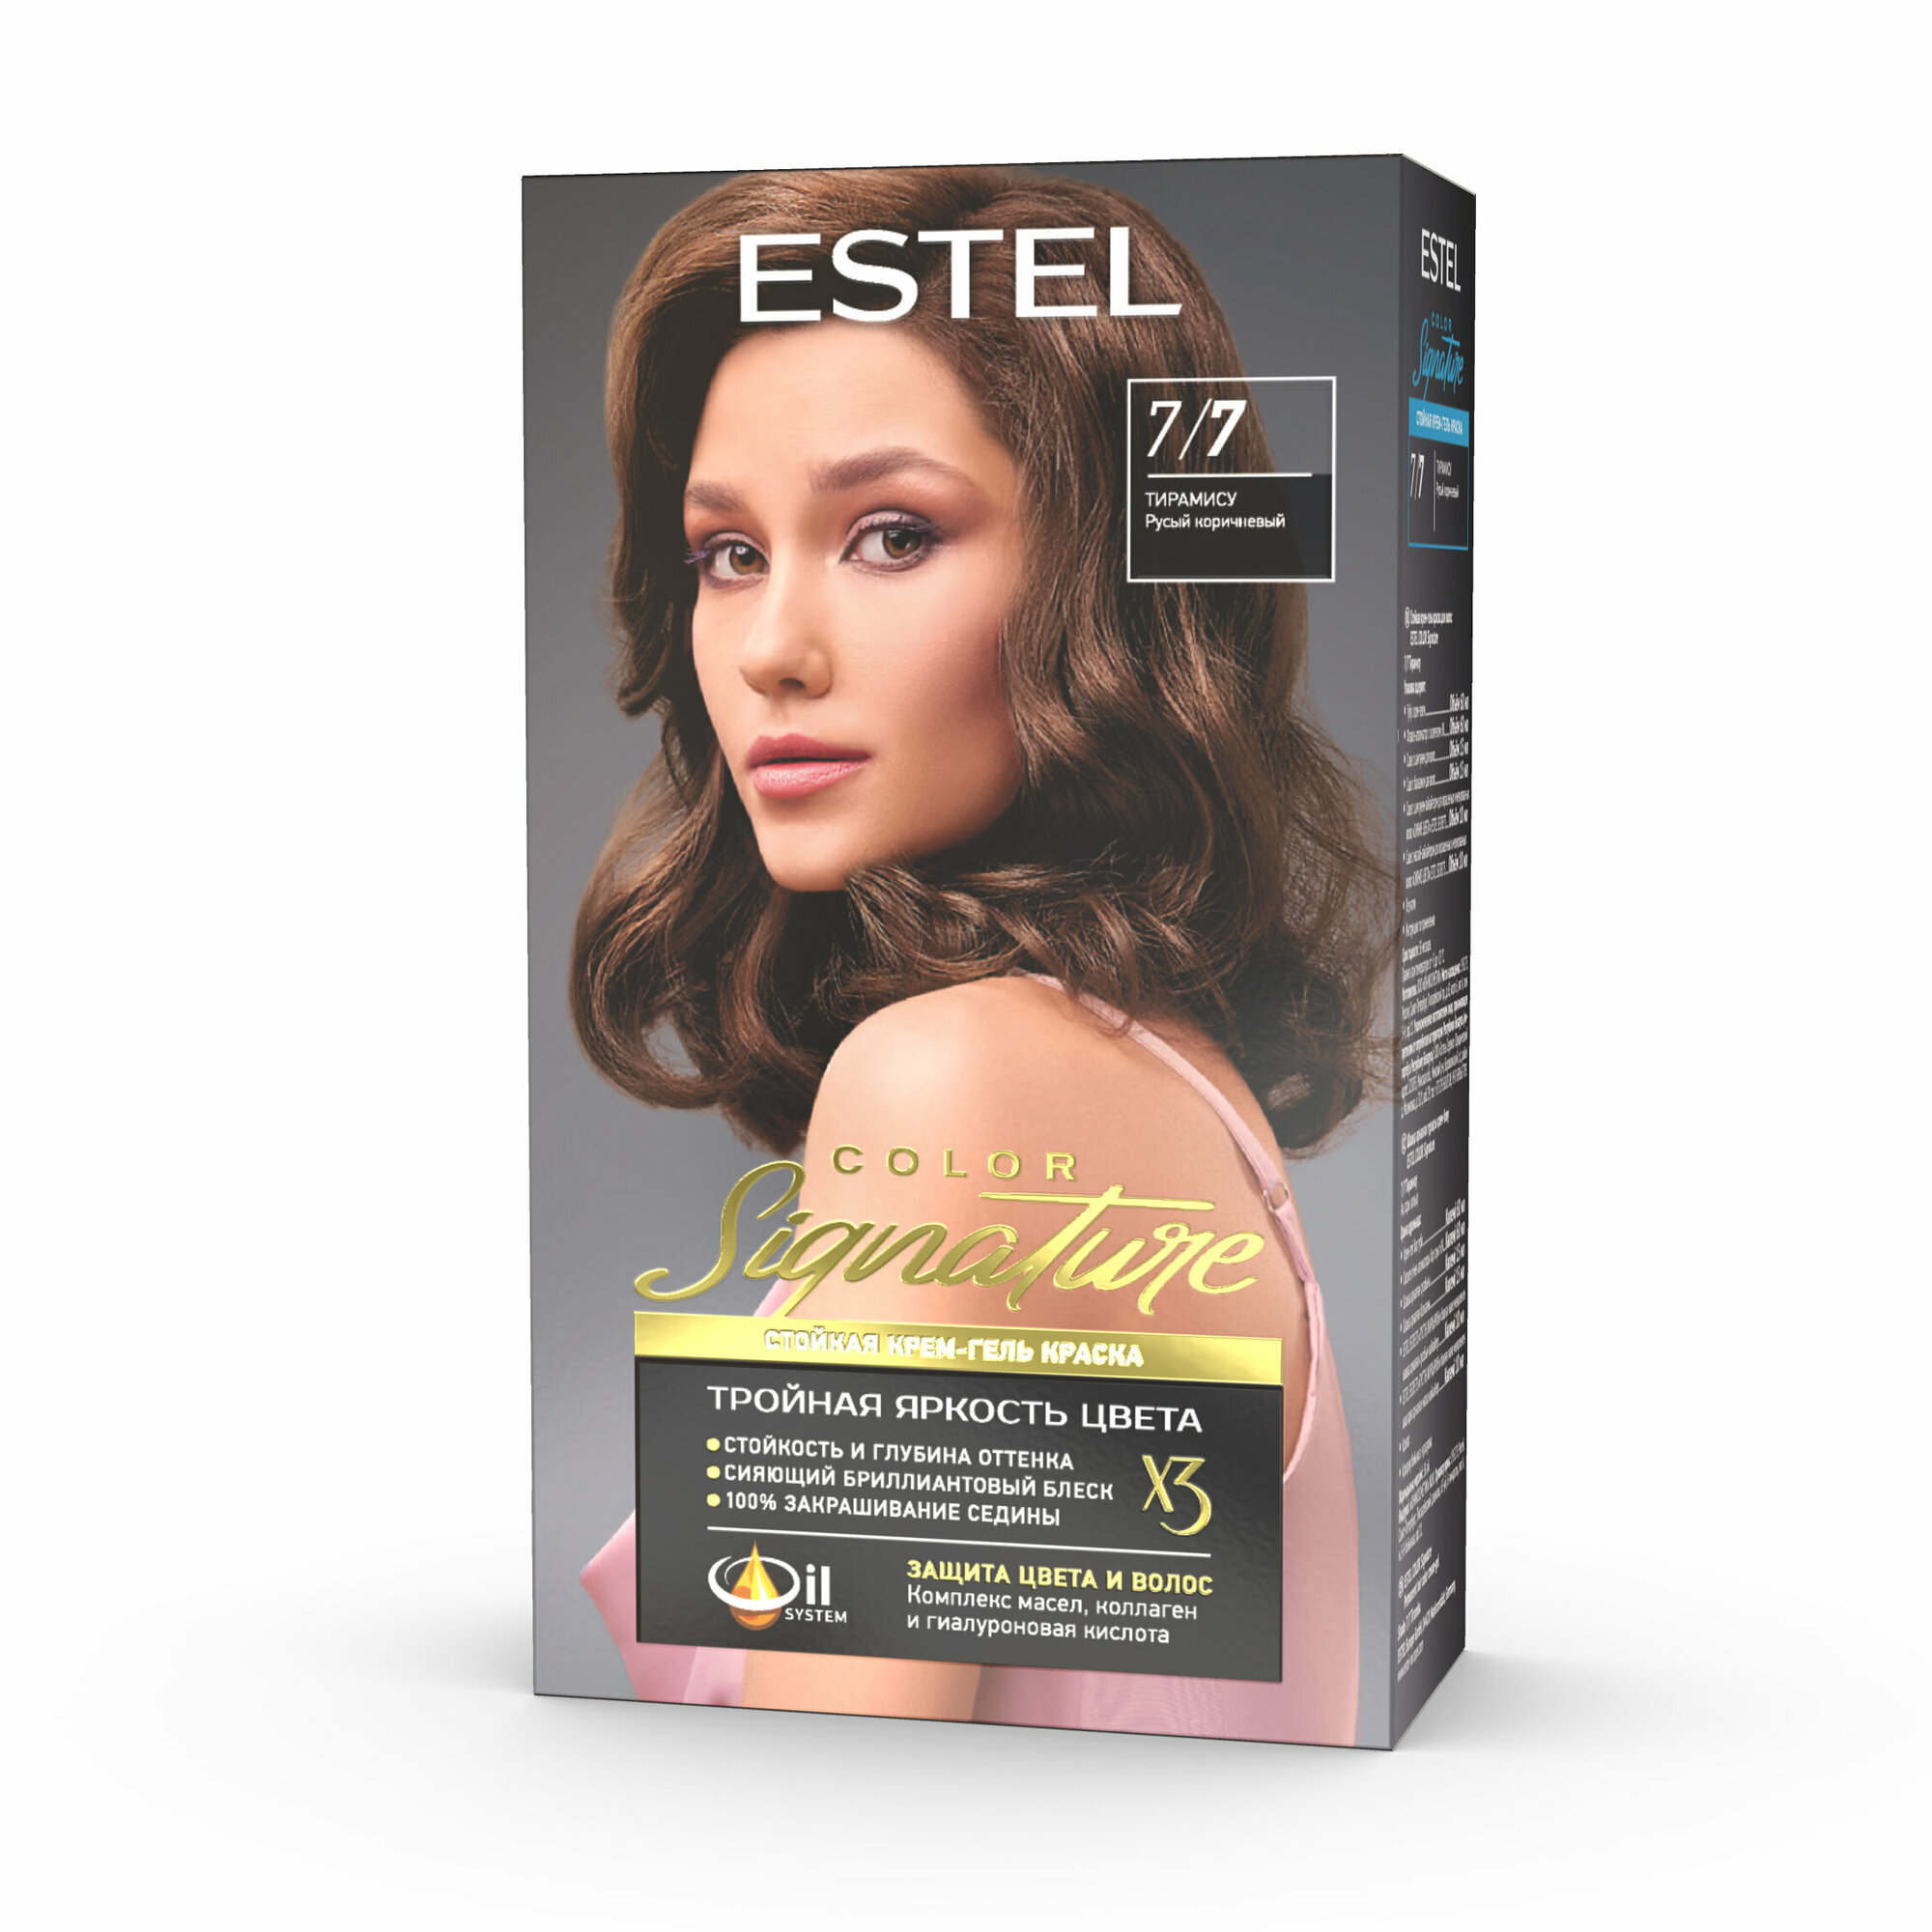 Крем-гель краска Estel color signature стойкая для волос 7/7 тирамису